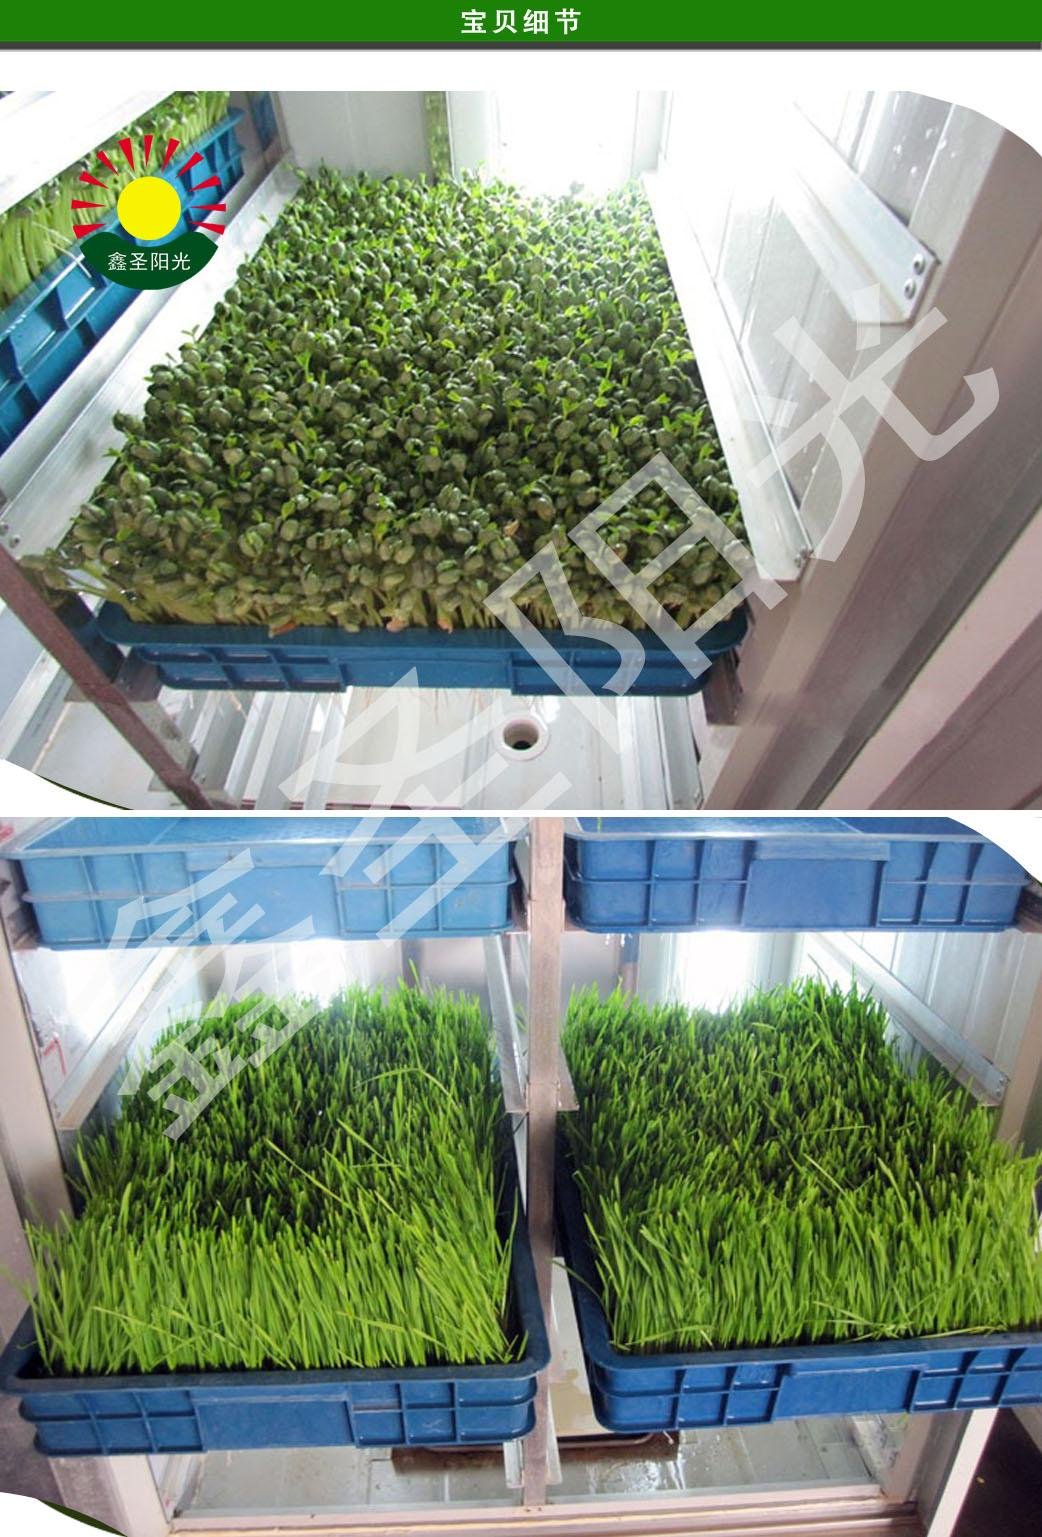 芽苗菜機商用全自動大型轉綠機質量保証多功能特價優質芽苗機 3